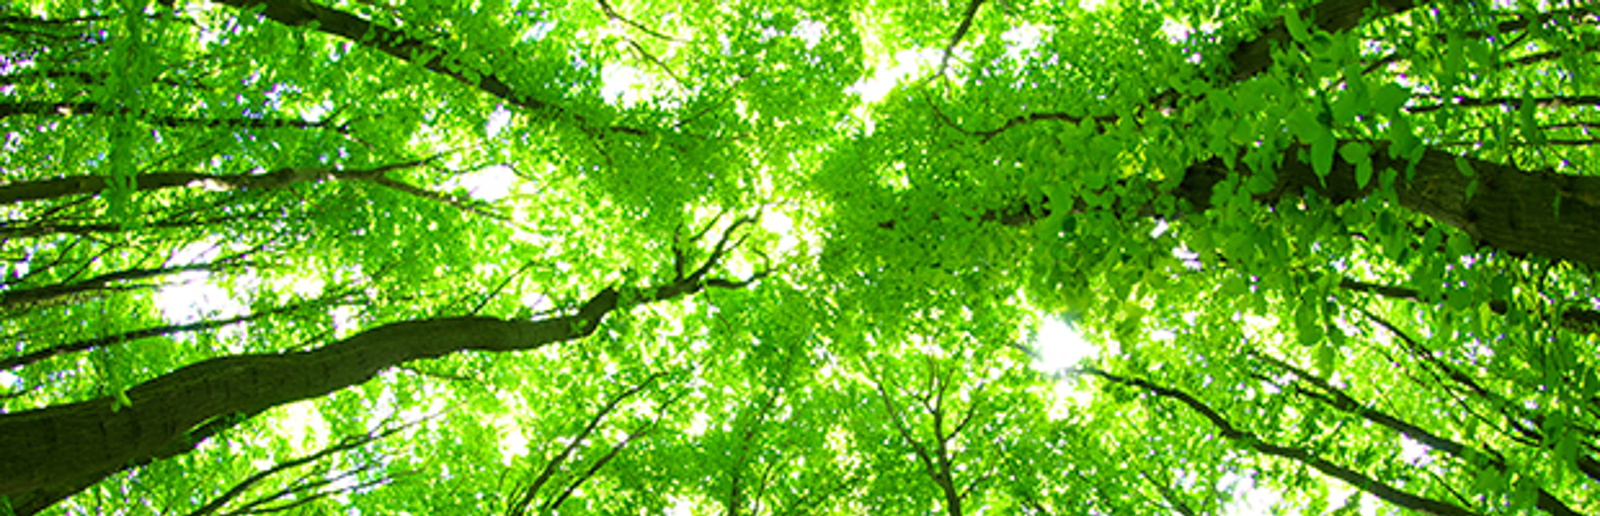 Träd med gröna blad